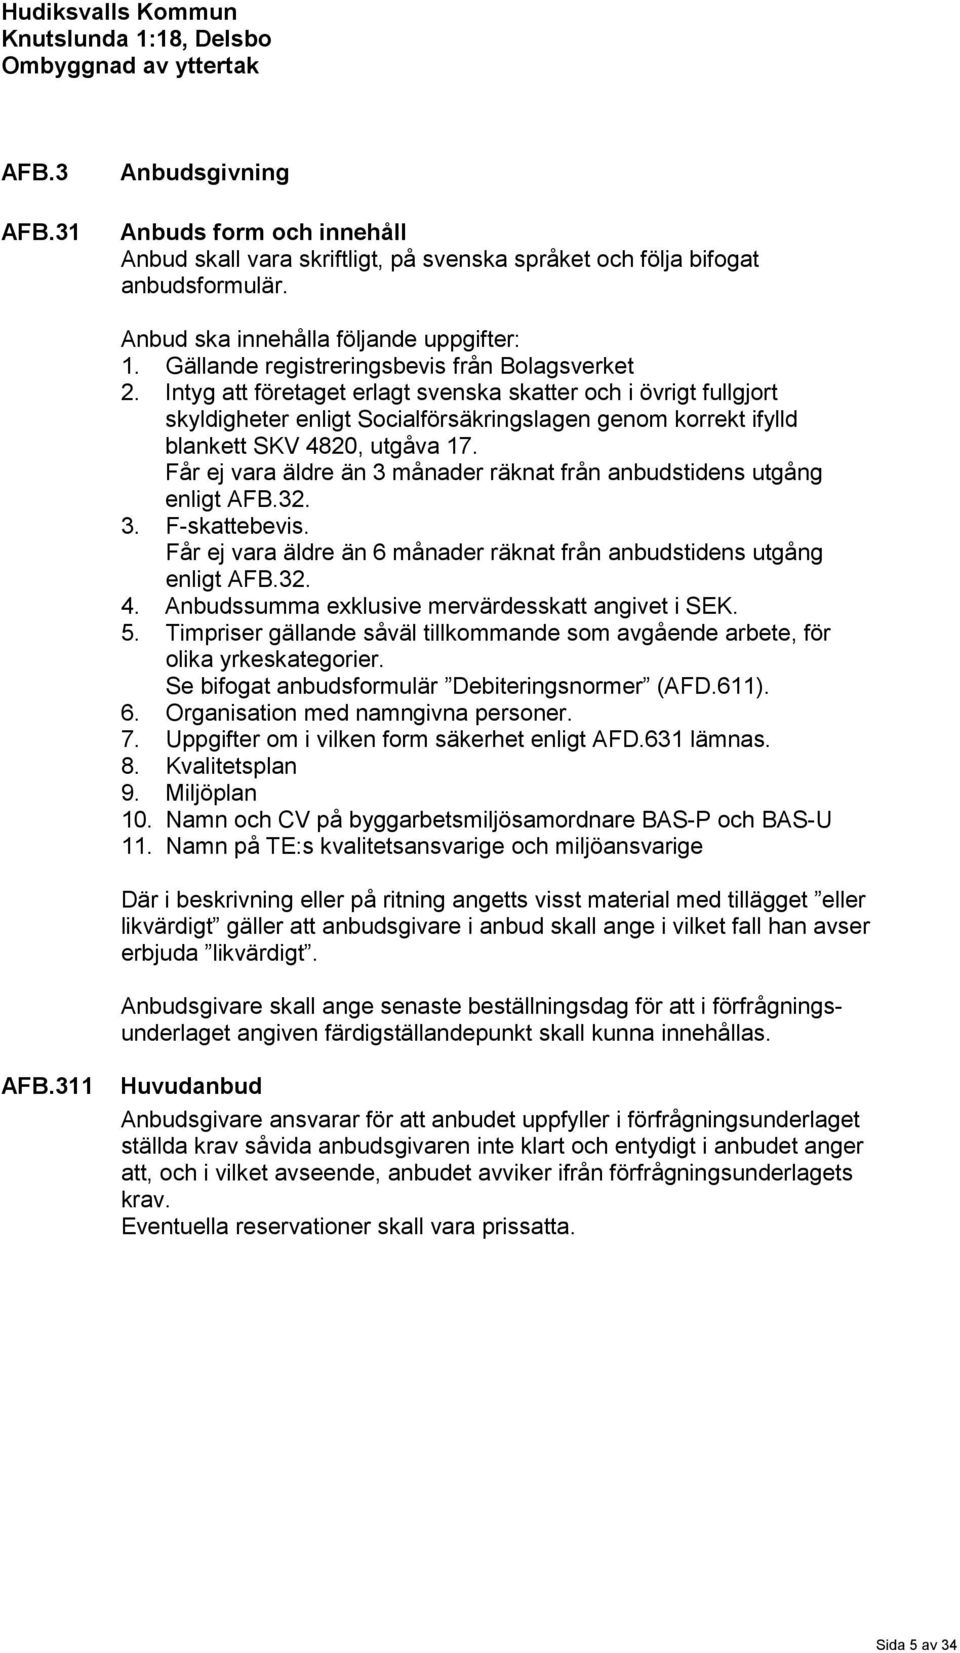 Intyg att företaget erlagt svenska skatter och i övrigt fullgjort skyldigheter enligt Socialförsäkringslagen genom korrekt ifylld blankett SKV 4820, utgåva 17.